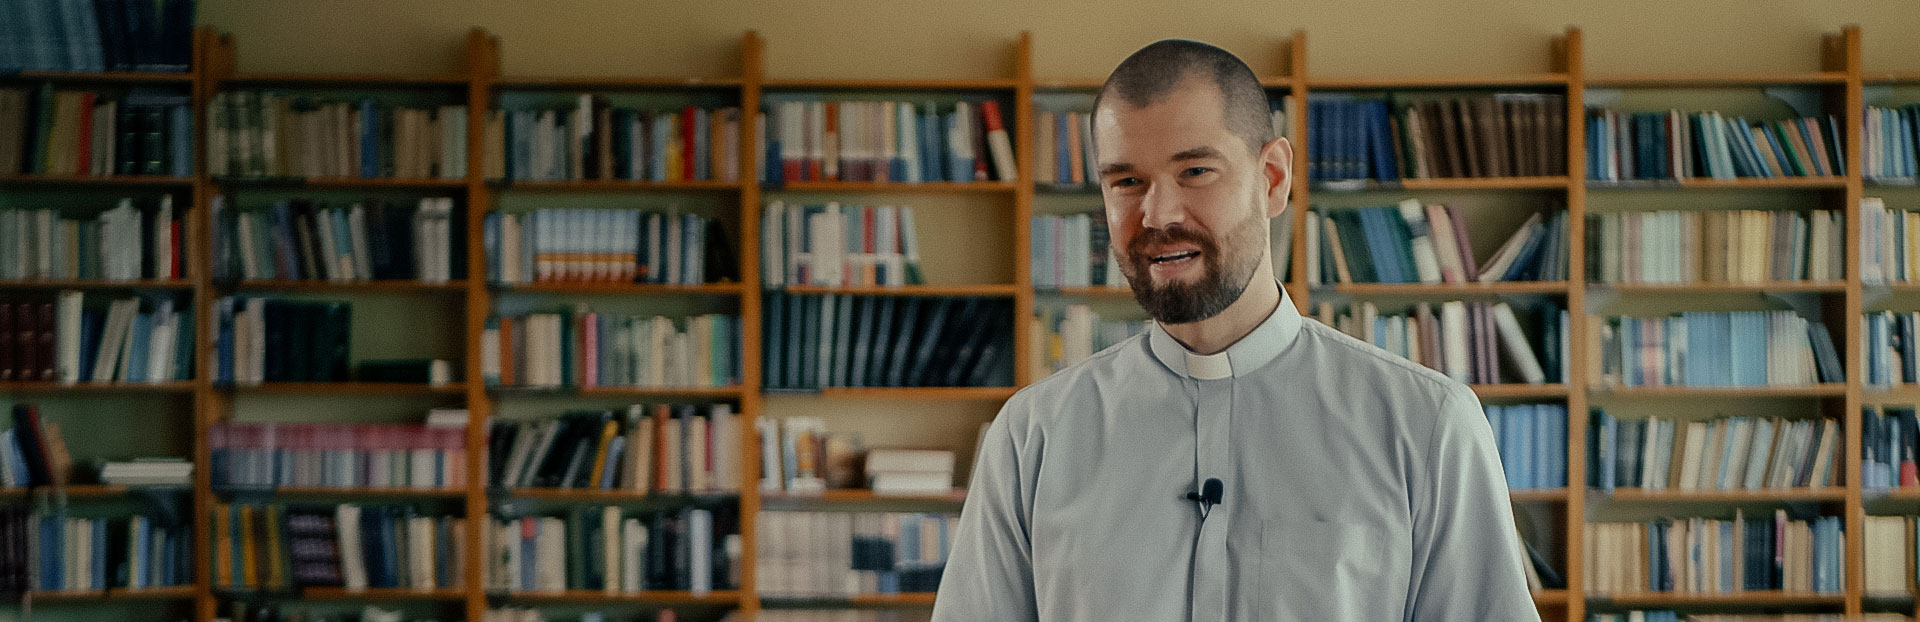 Le vœu de pauvreté des jésuites – Une nouvelle série vidéo mensuelle